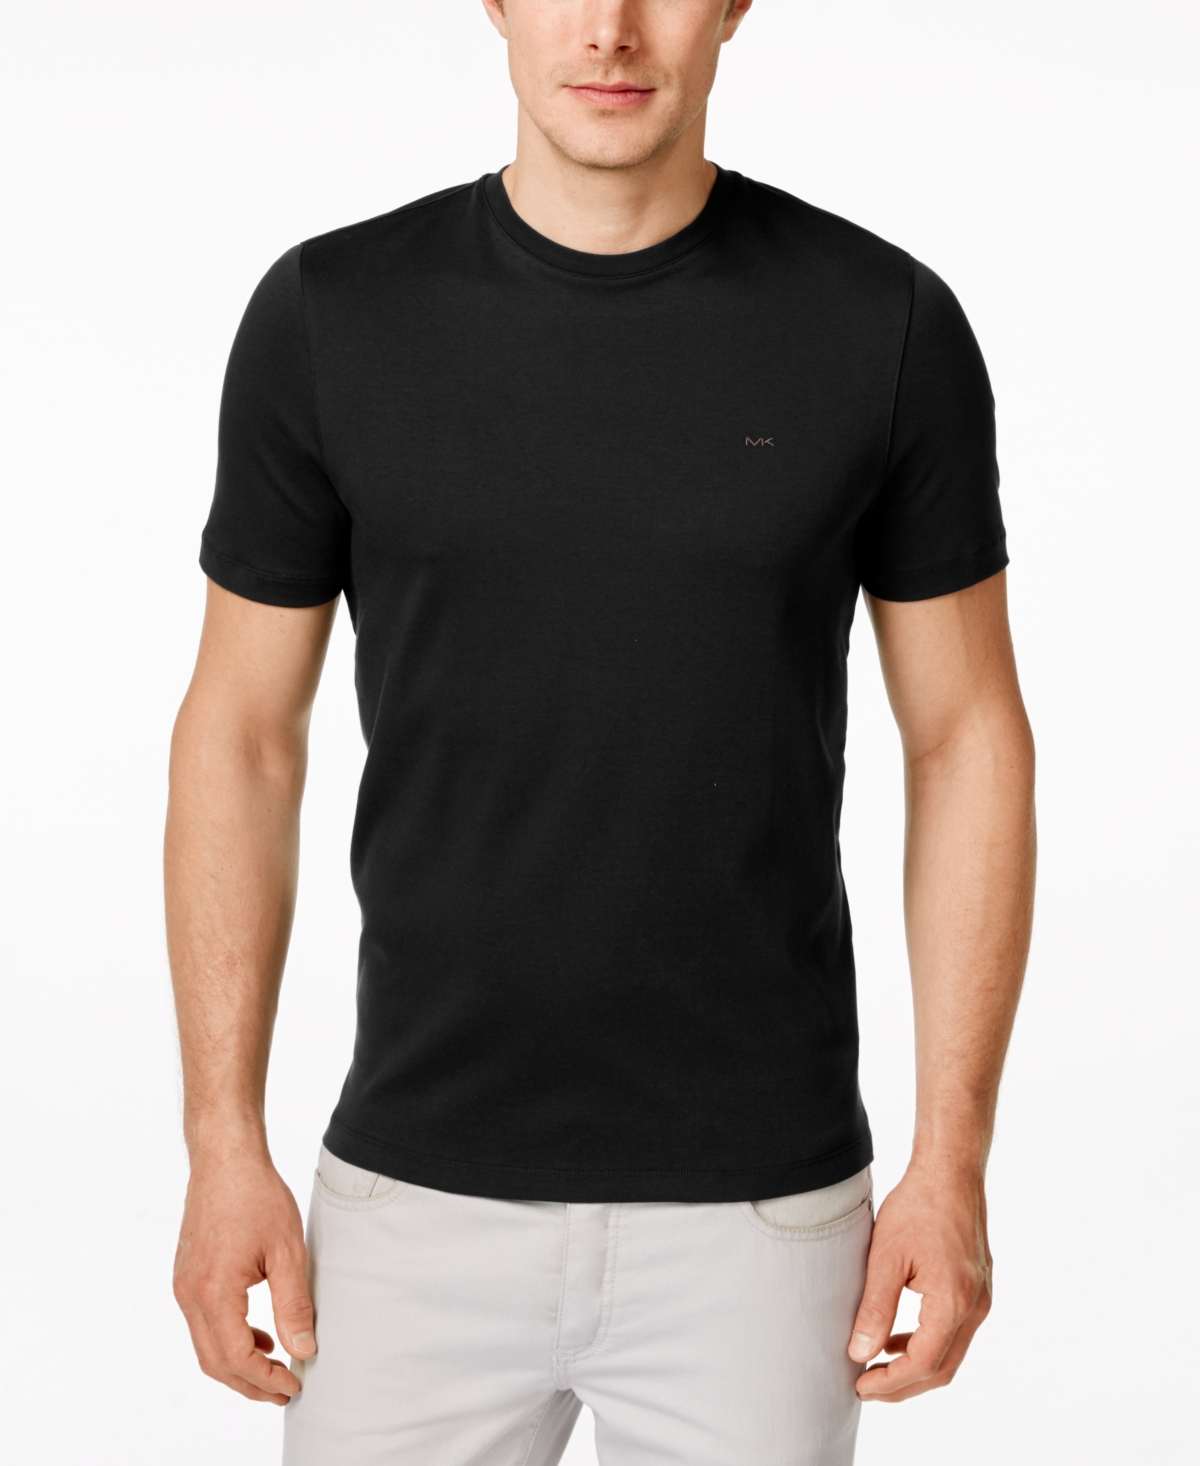 Michael Kors Men's Basic Crew Neck T-shirt In Black